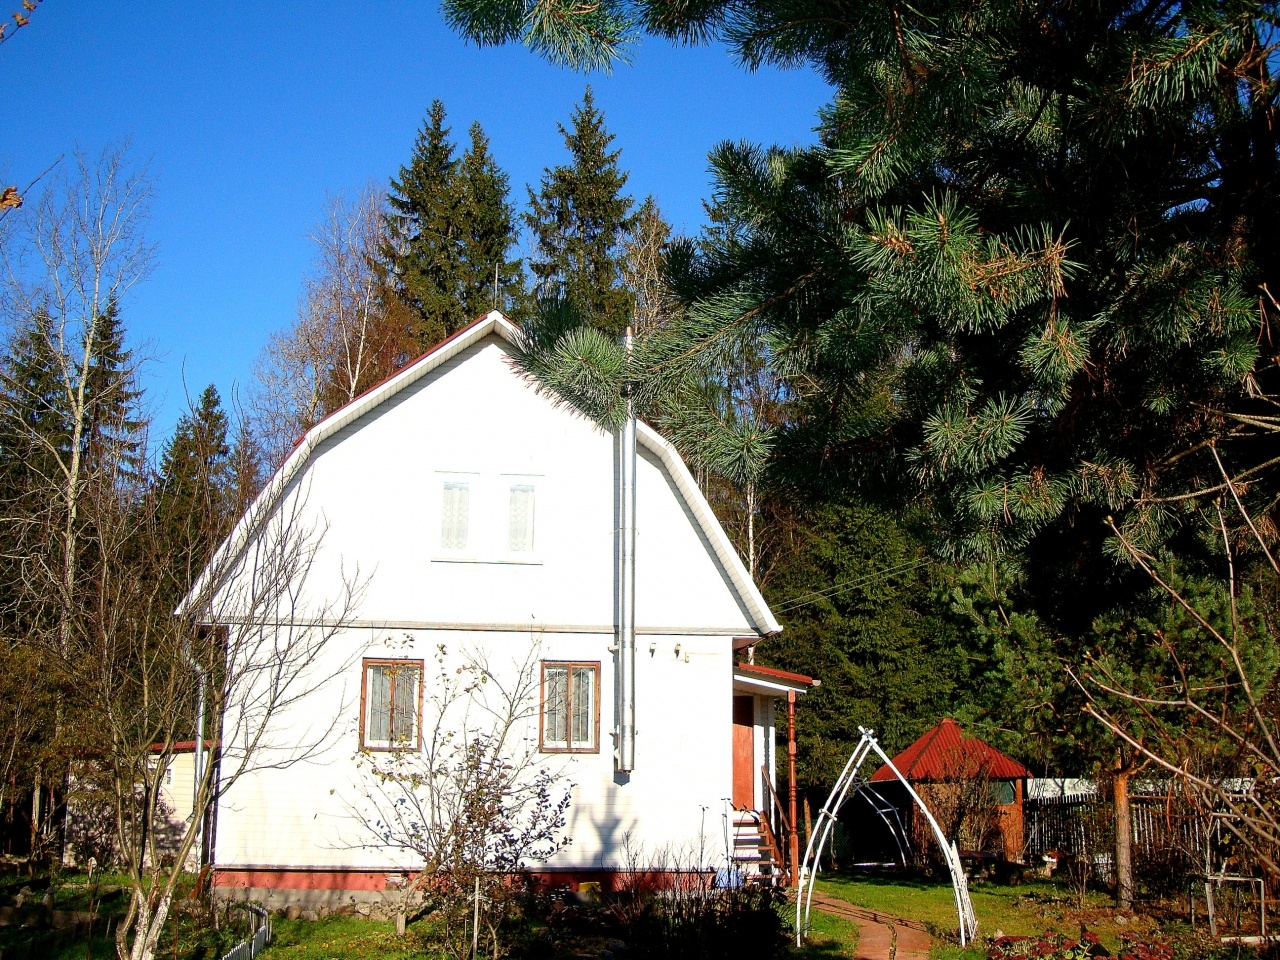 Продажа домов в алтайском крае недорого и с фото свежие объявления